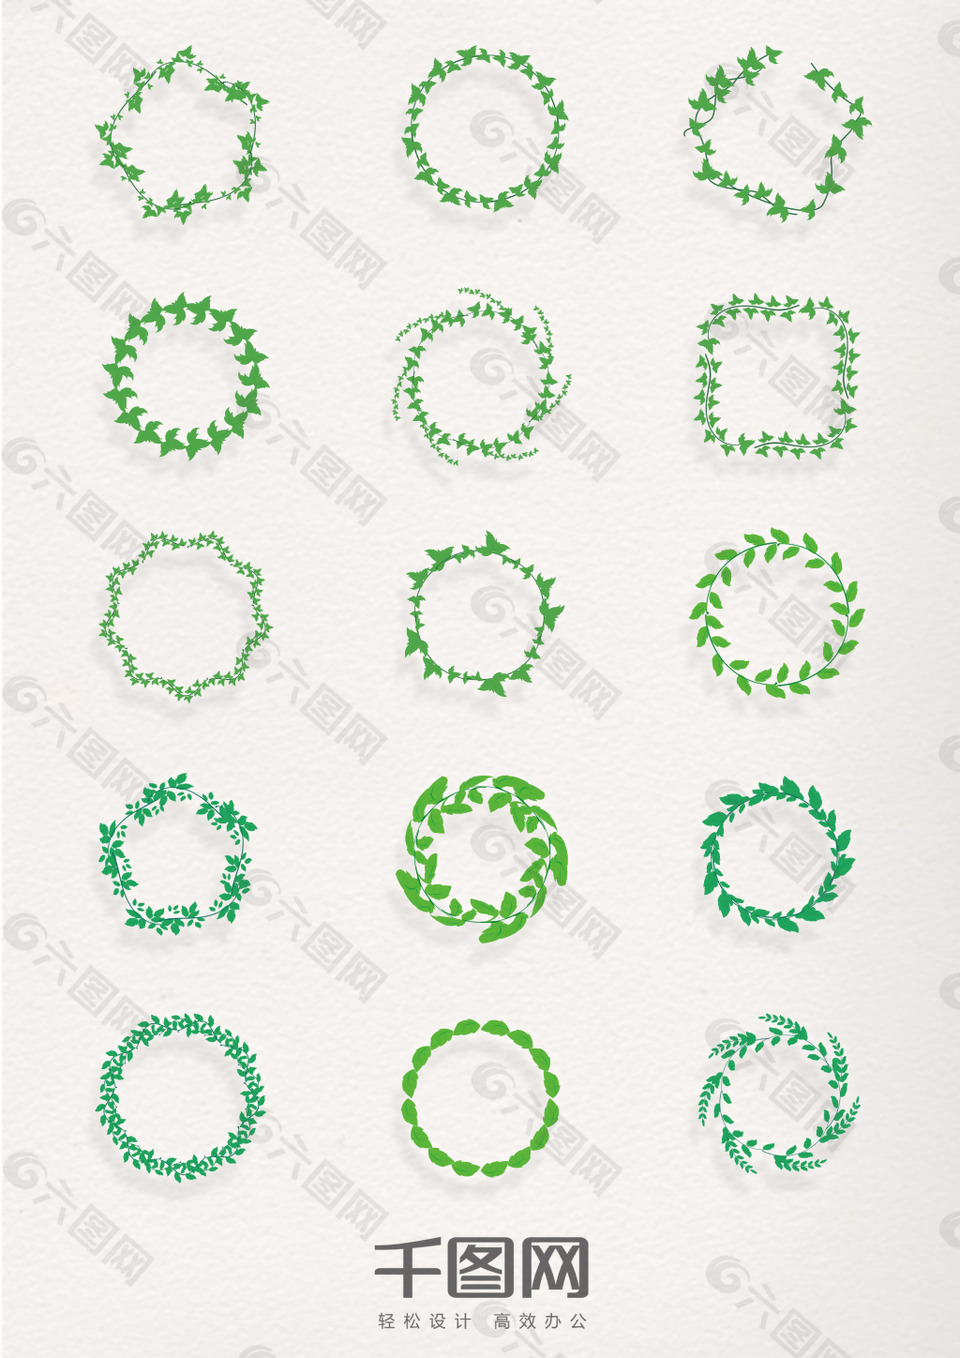 多种绿色叶子圆环造型元素